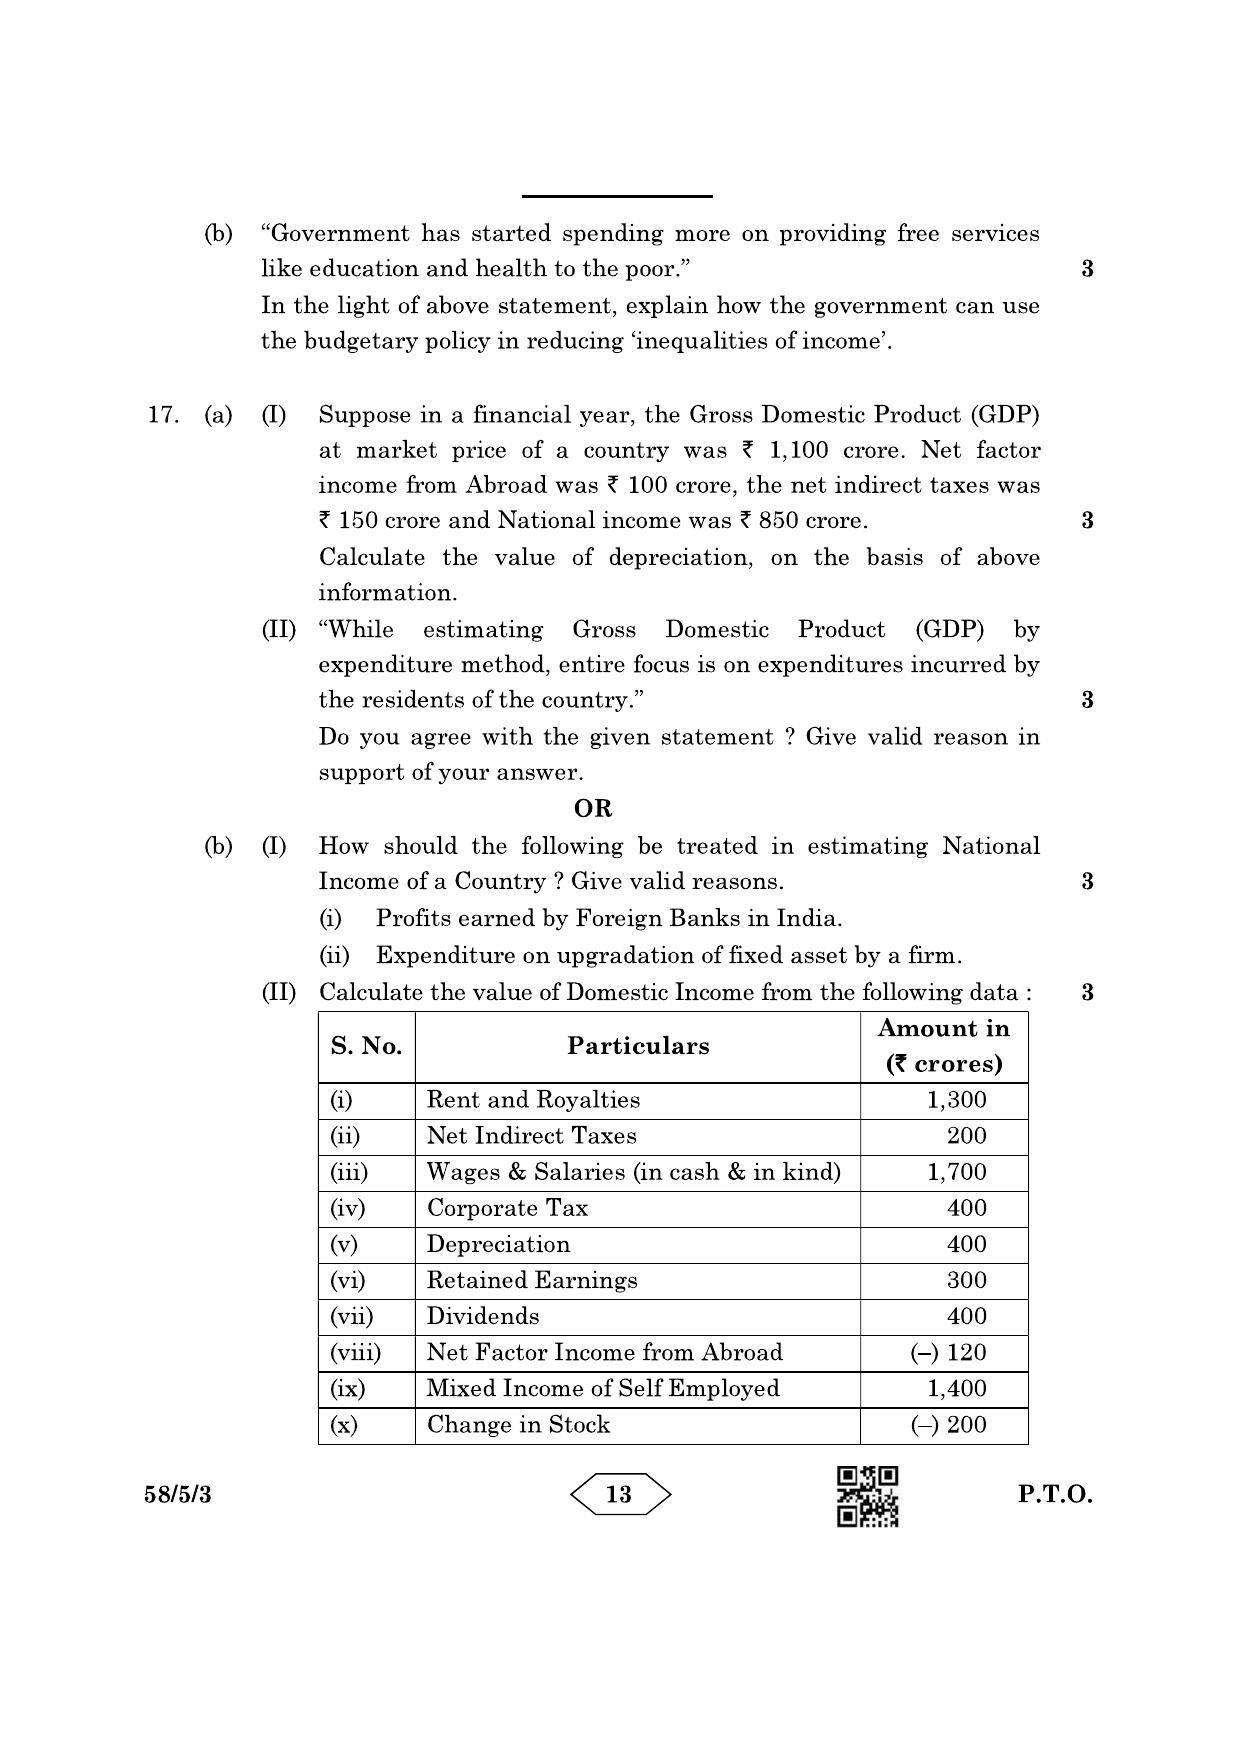 CBSE Class 12 58-5-3 Economics 2023 Question Paper - Page 13